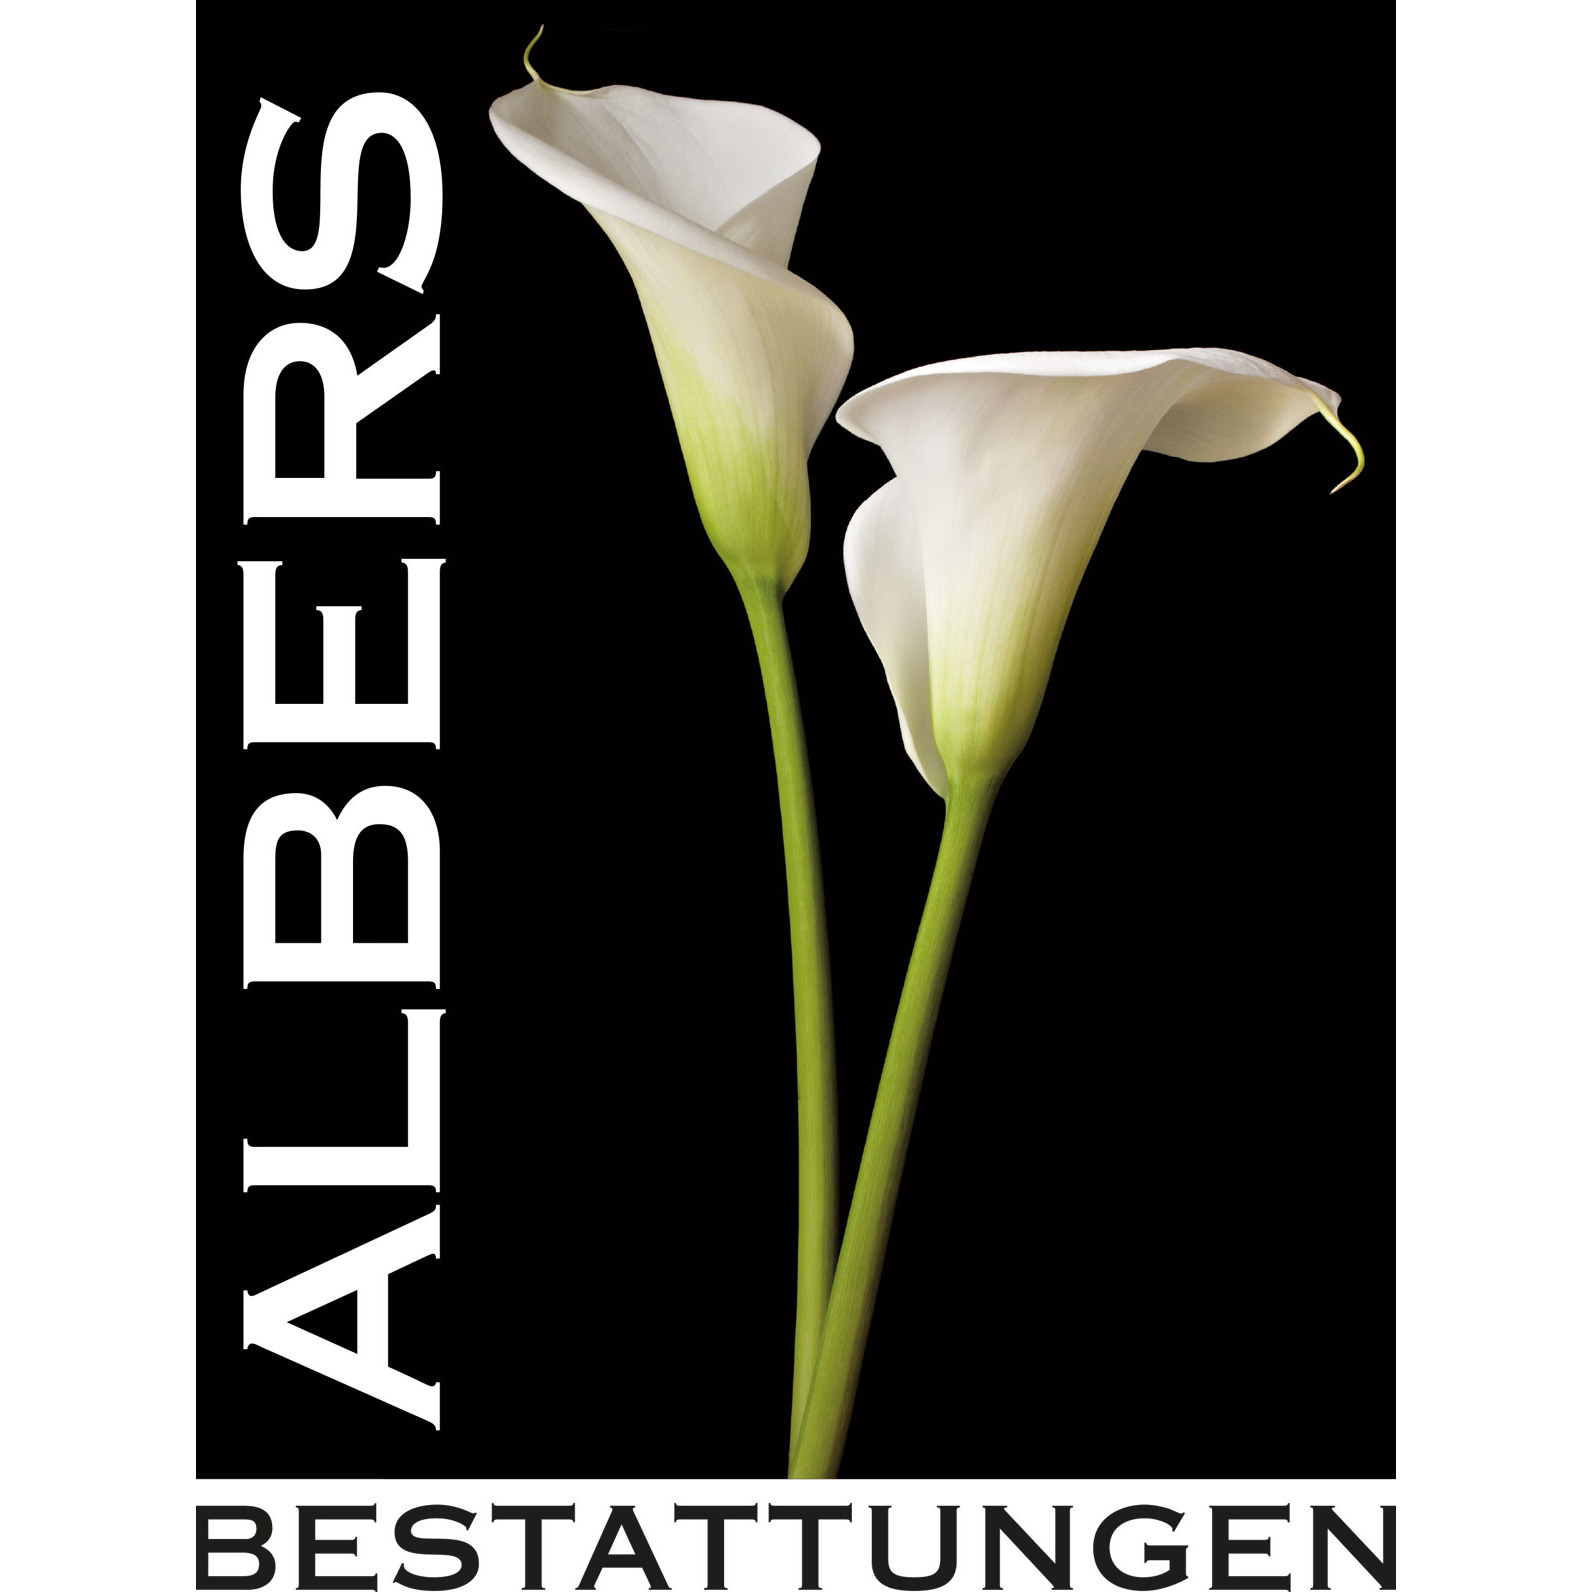 Albers Bestattungen in Hamburg - Logo